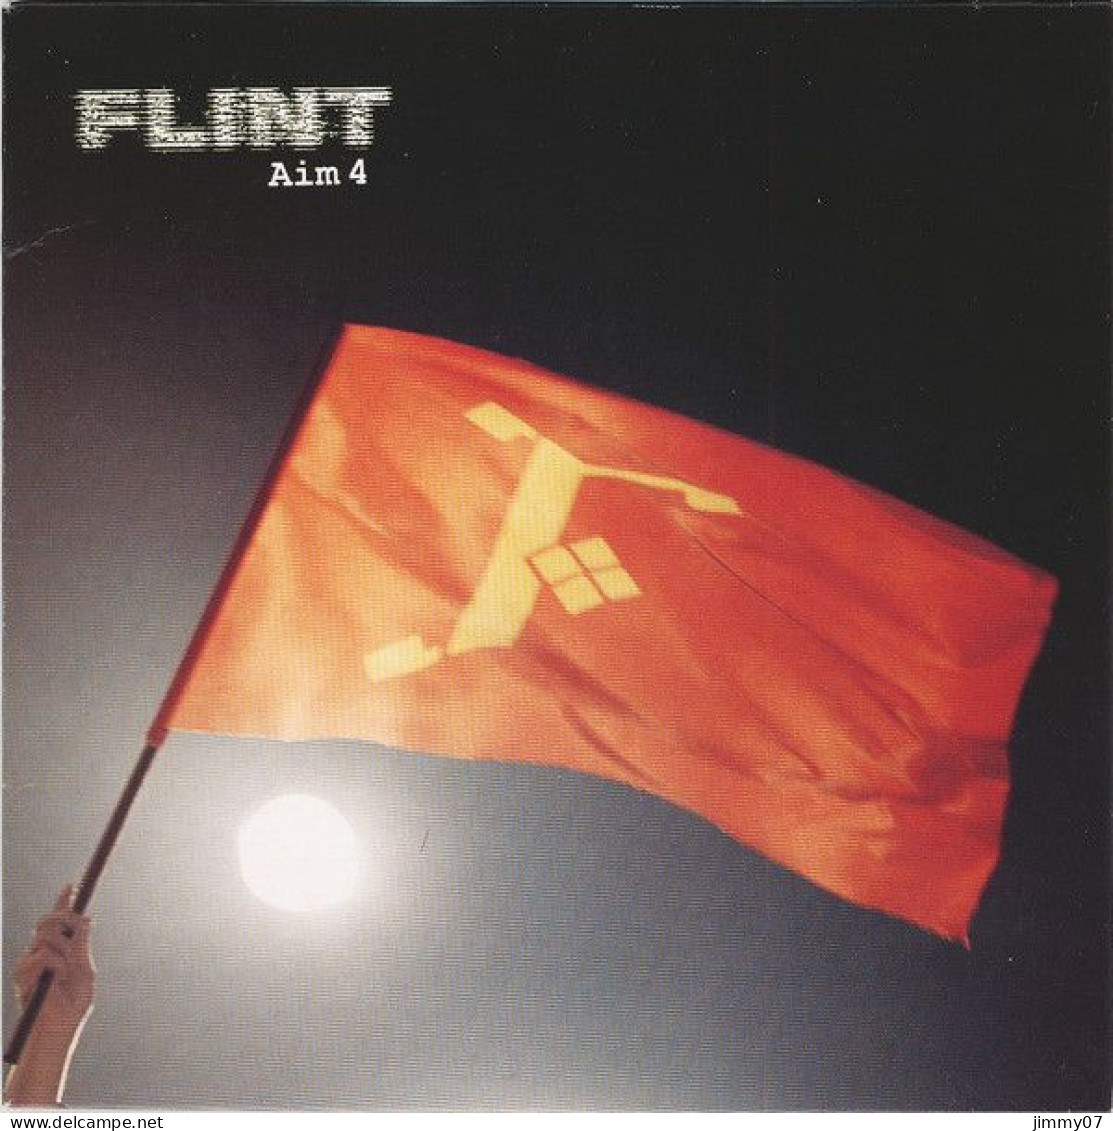 Flint  - Aim 4 (7", Single) - Rock